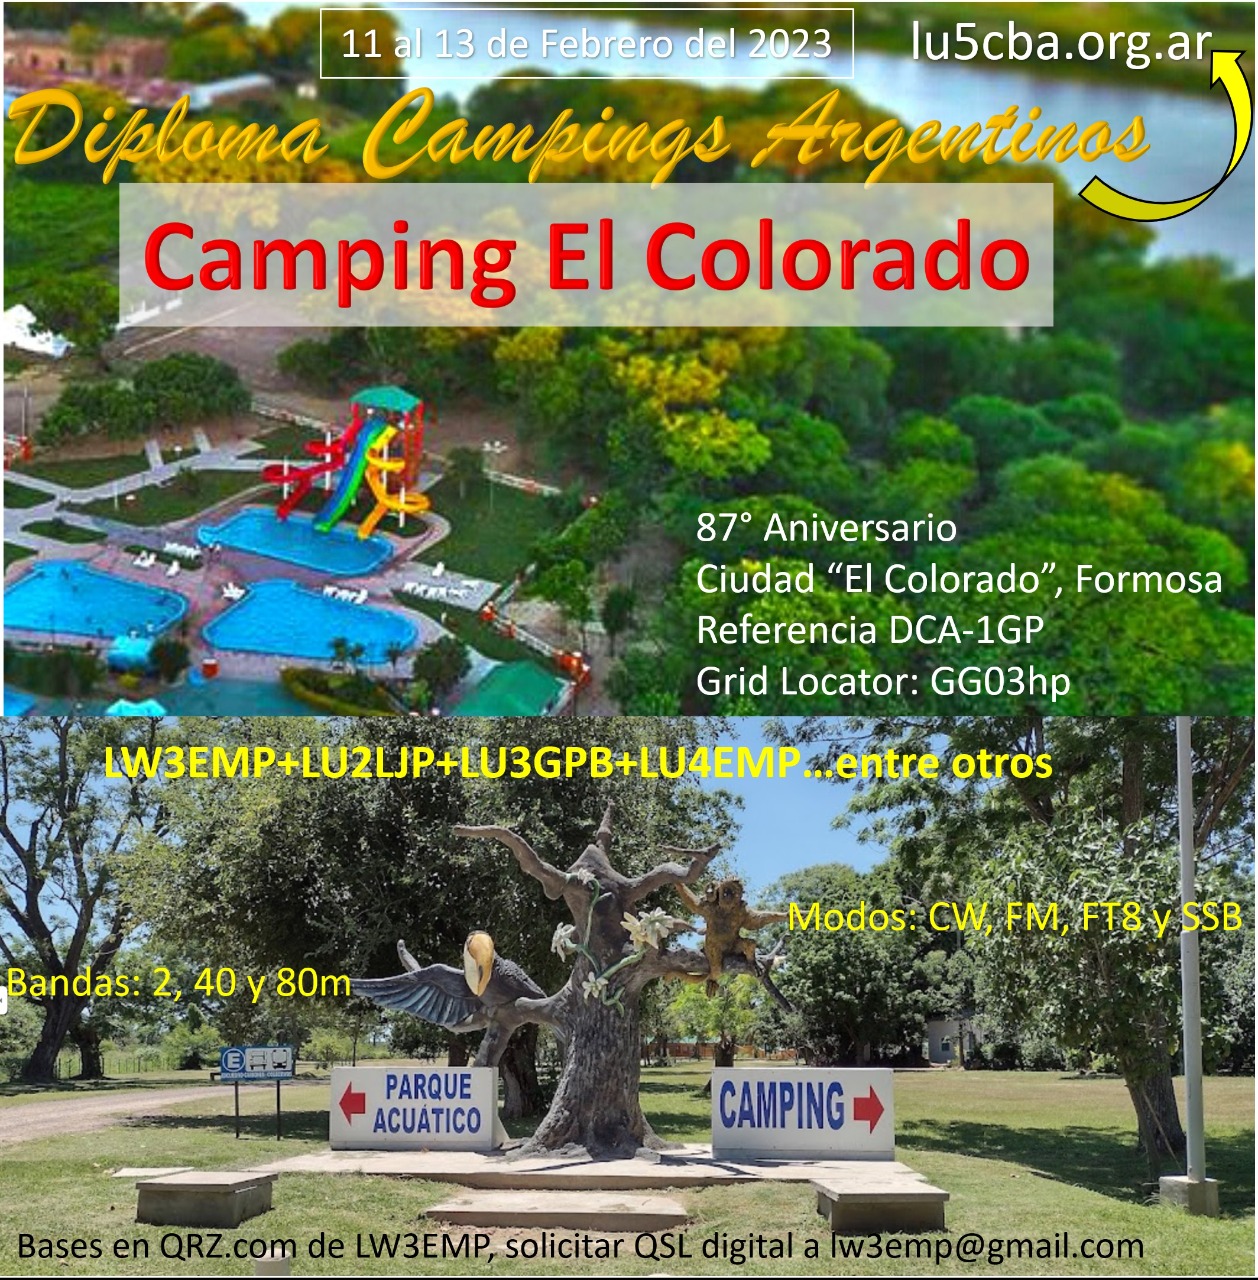 Diploma Campings Argentinos: Camping El Colorado